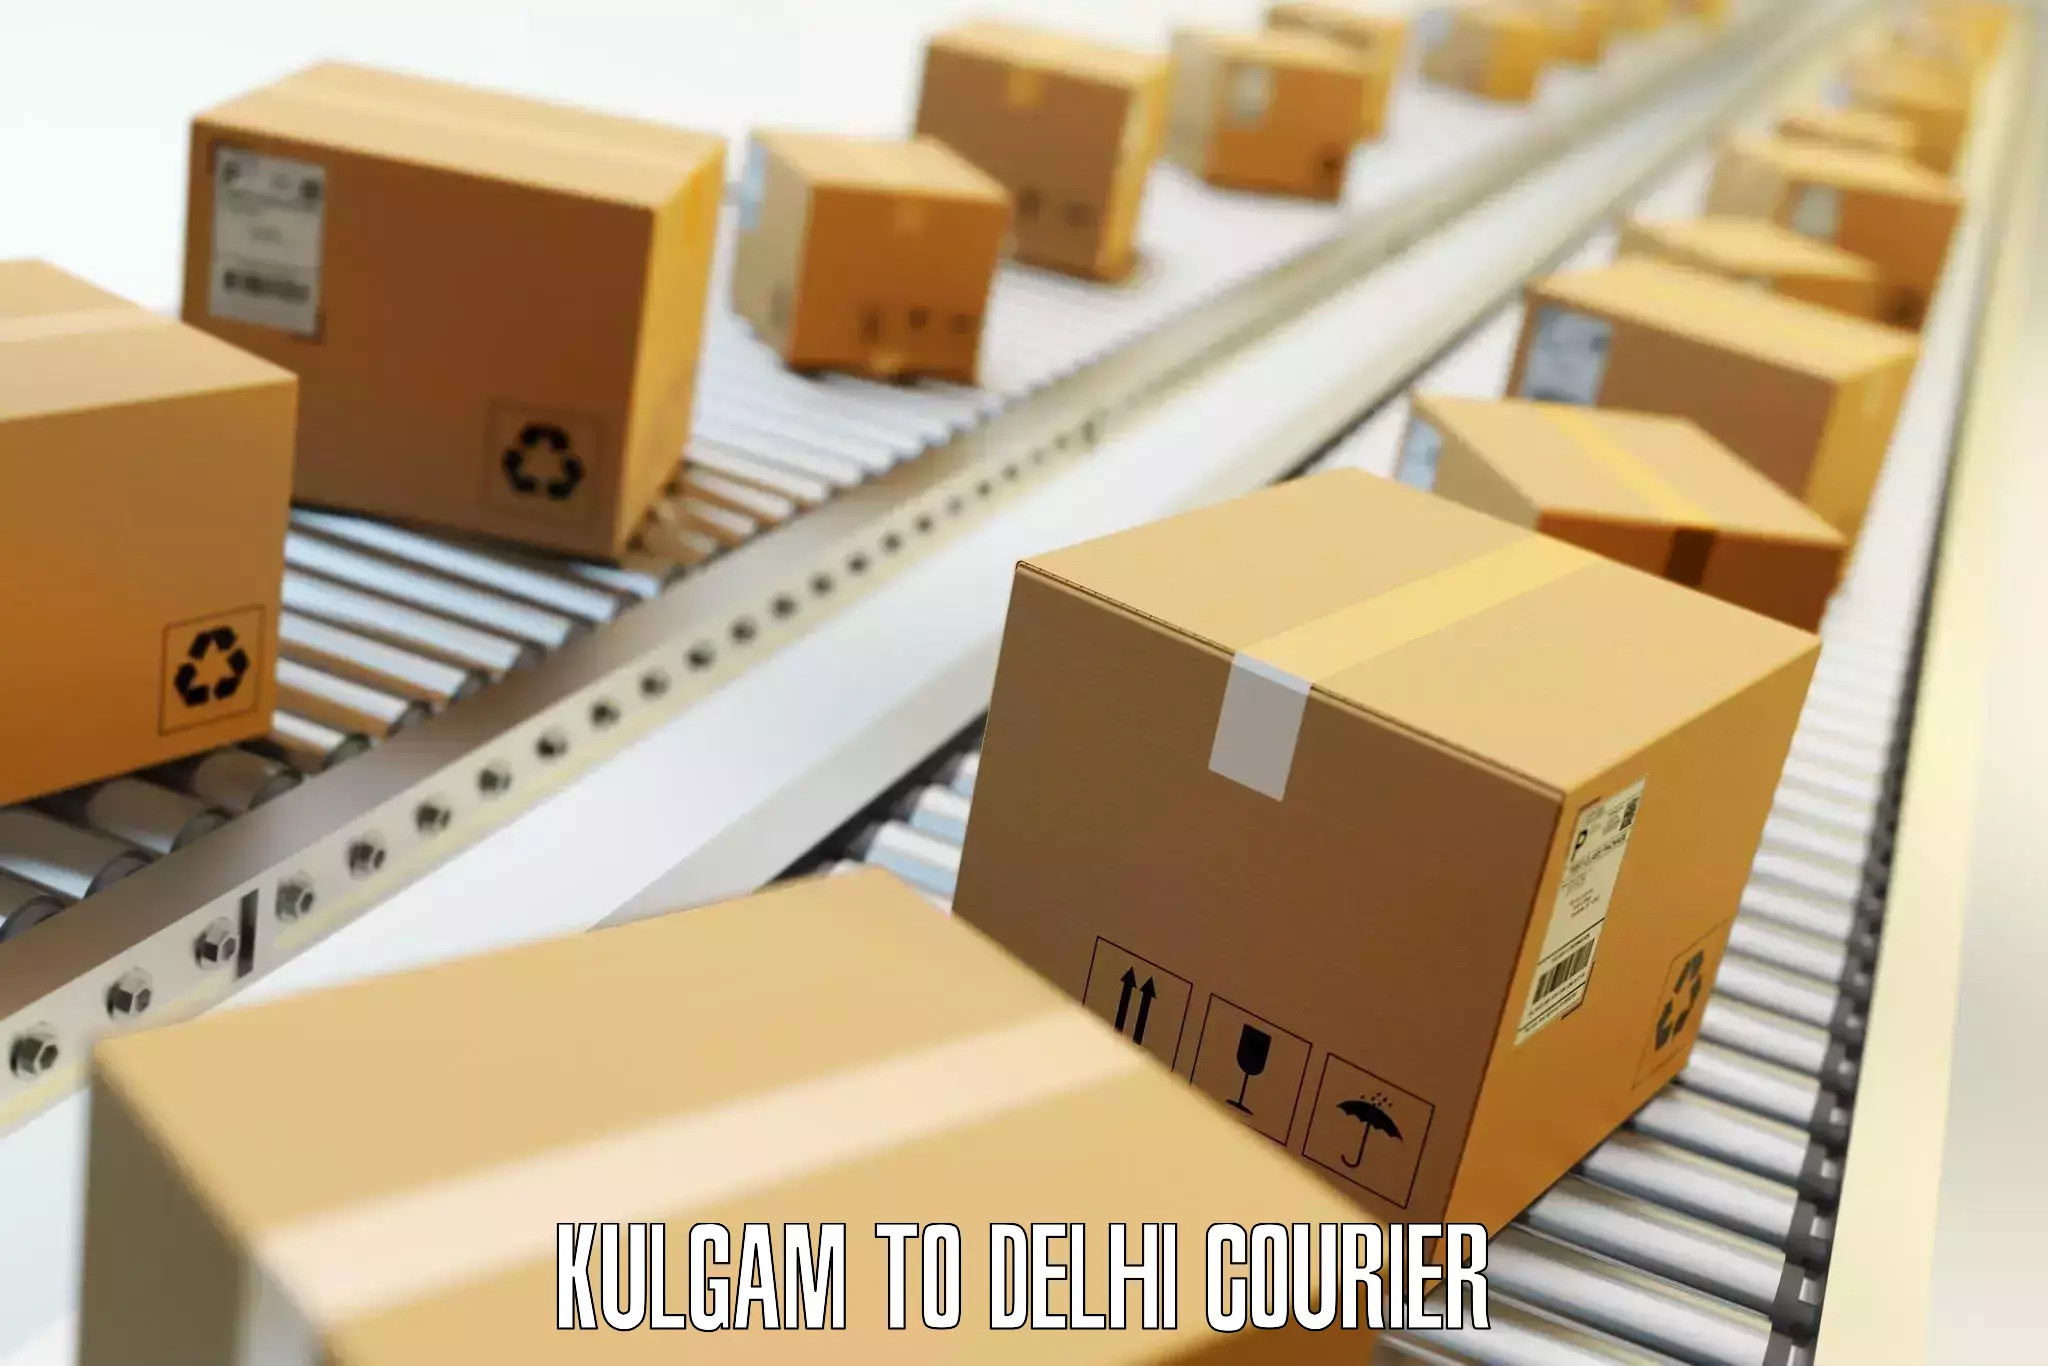 Luggage delivery optimization Kulgam to Kalkaji